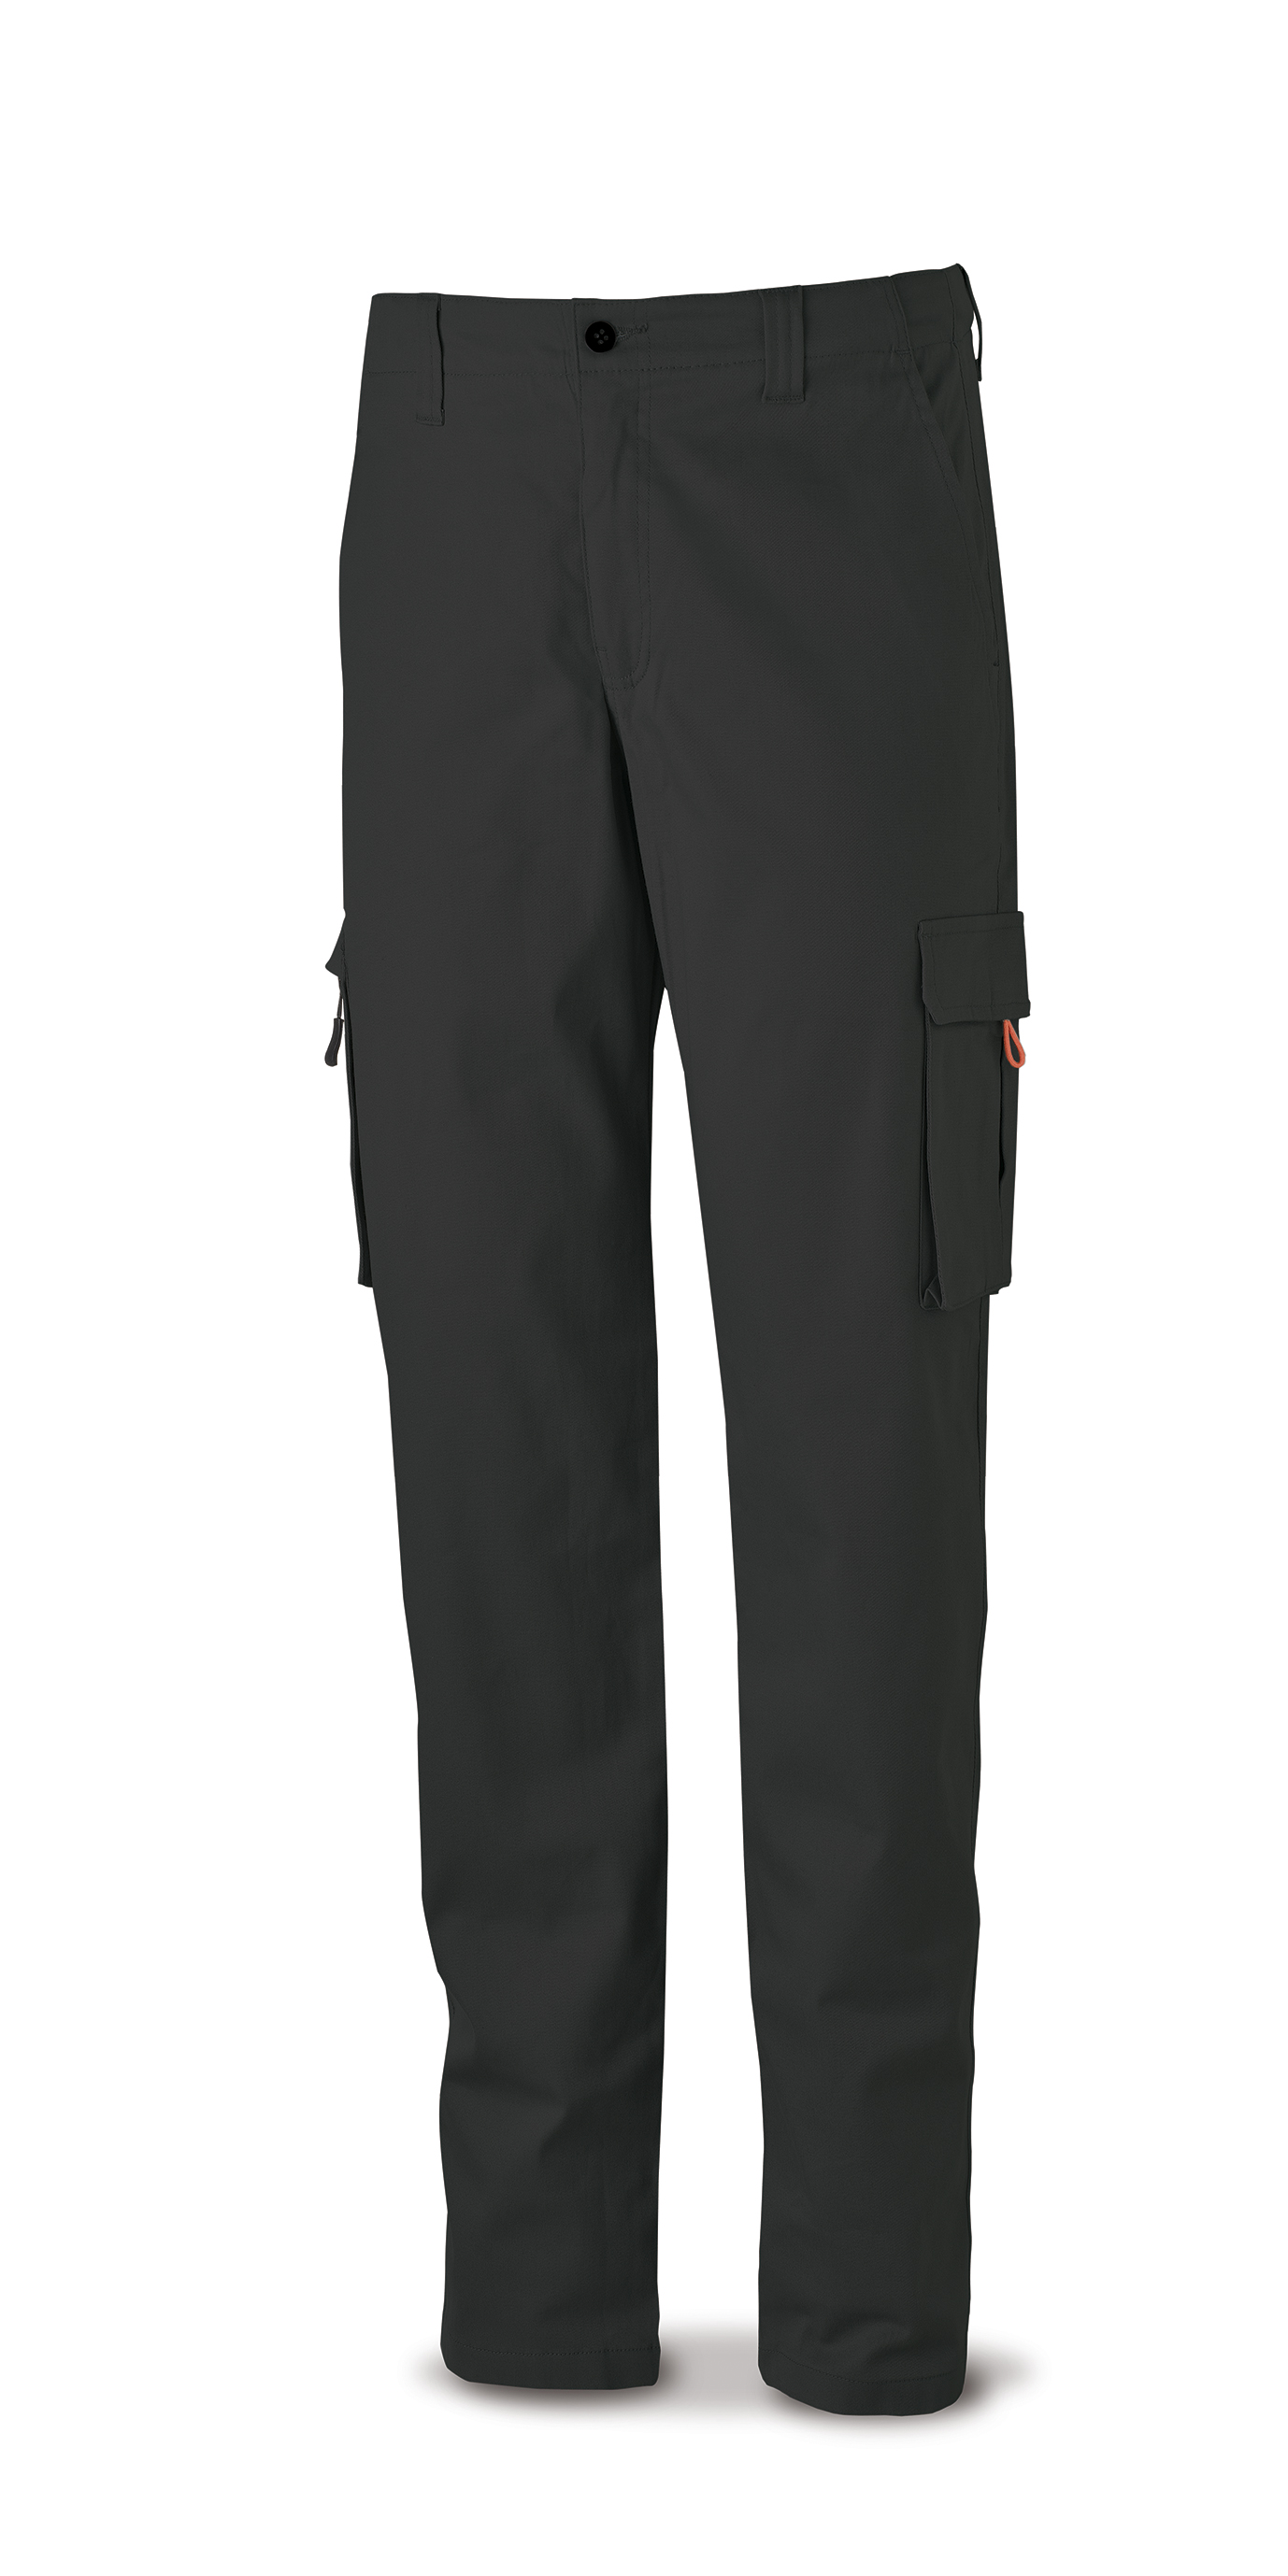 588-PELASRN Vestuario Laboral Serie Casual Pantalón STRETCH negro en algodón 260 gr. Multibolsillos